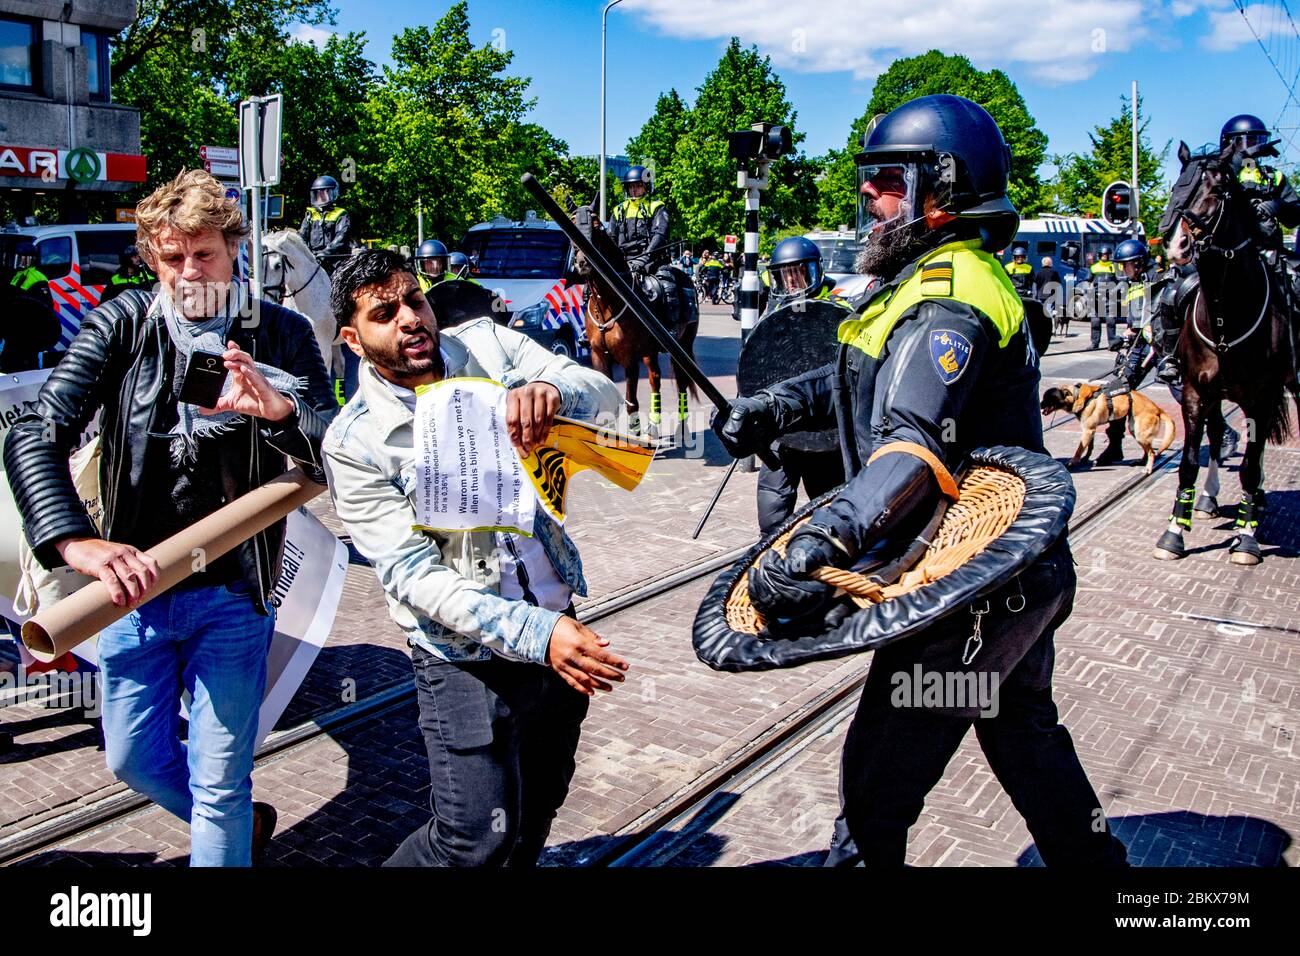 Un dimostratore che si scontrava con un poliziotto durante la protesta.decine di attivisti anti-blocco sono stati arrestati mentre dimostravano contro le misure contro il virus corona all'Aia. Foto Stock